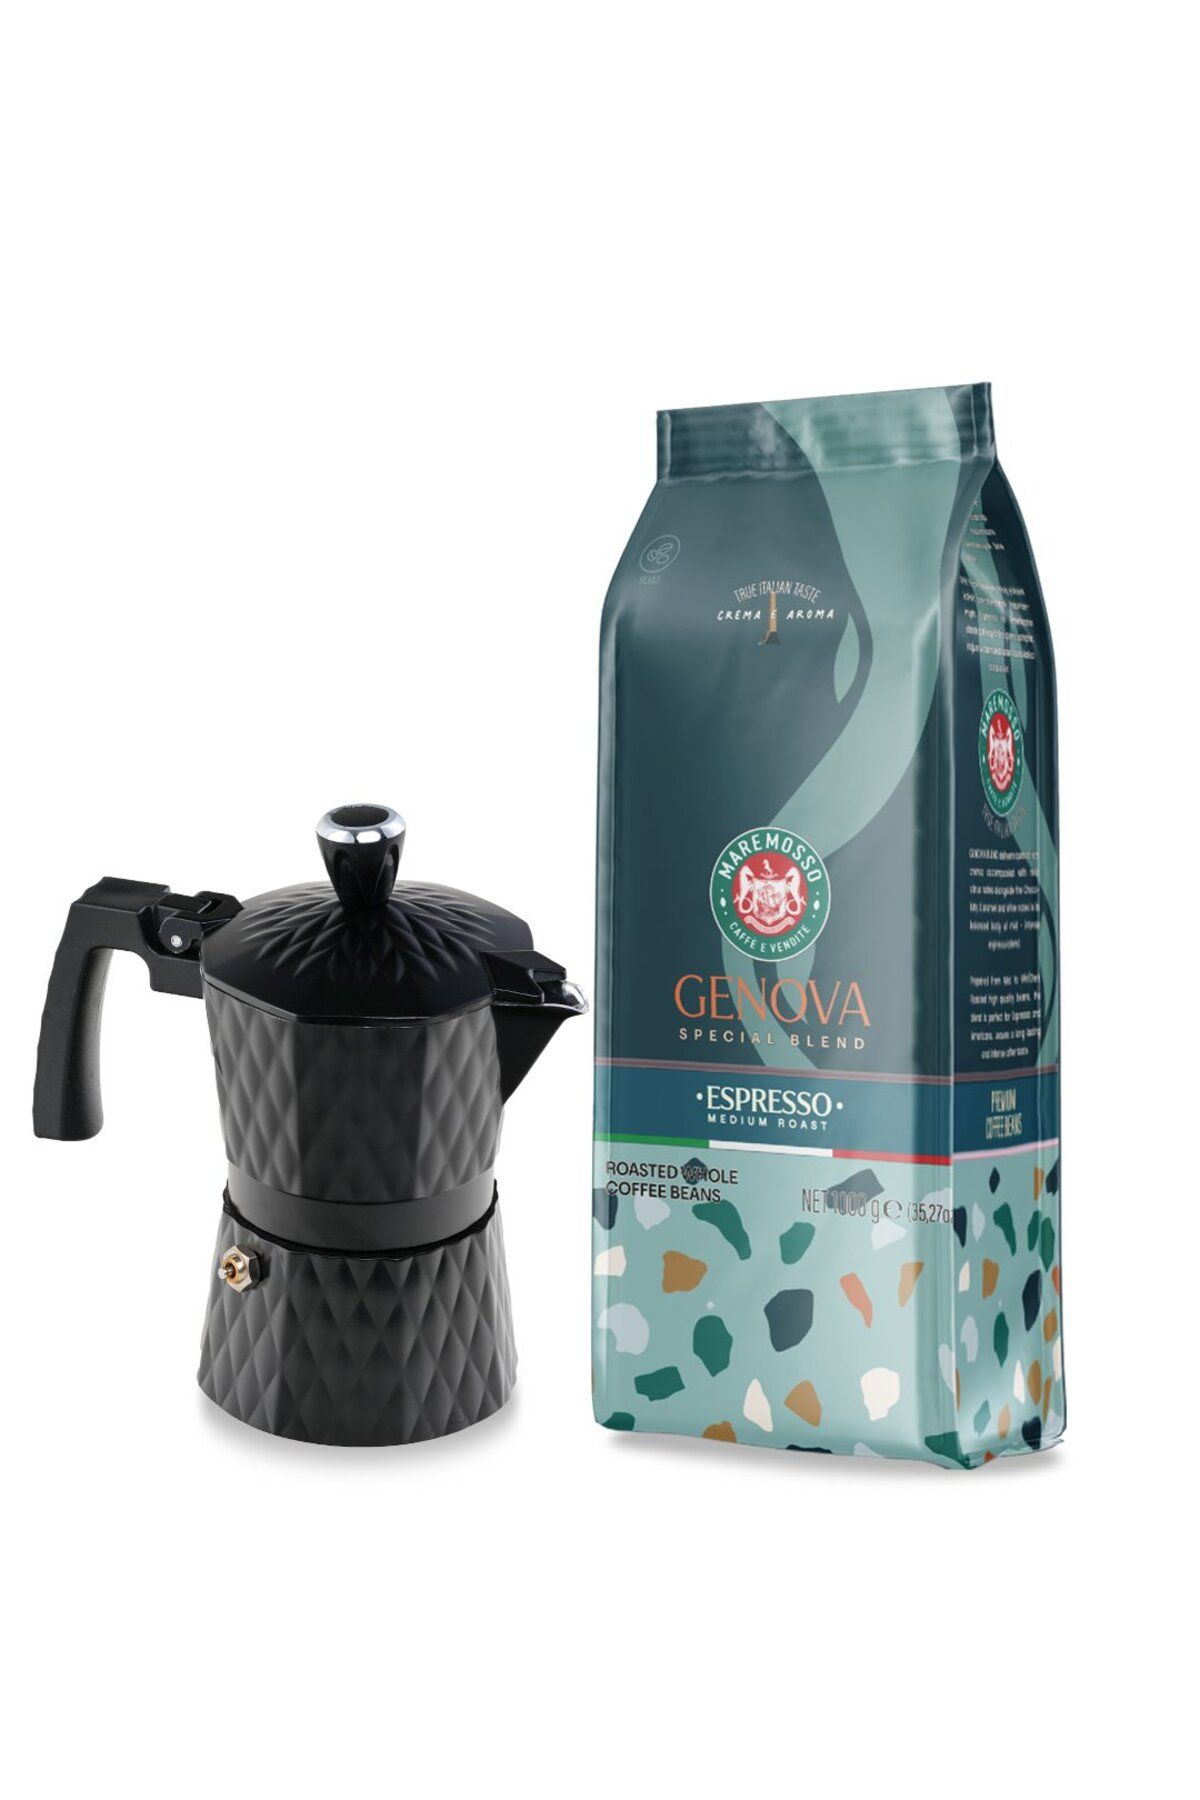 Mare Mosso Caffe ê Vendite Genova Espresso Kahve 1Kg. & Moka Pot 3 Cup. (Siyah) 1. Set